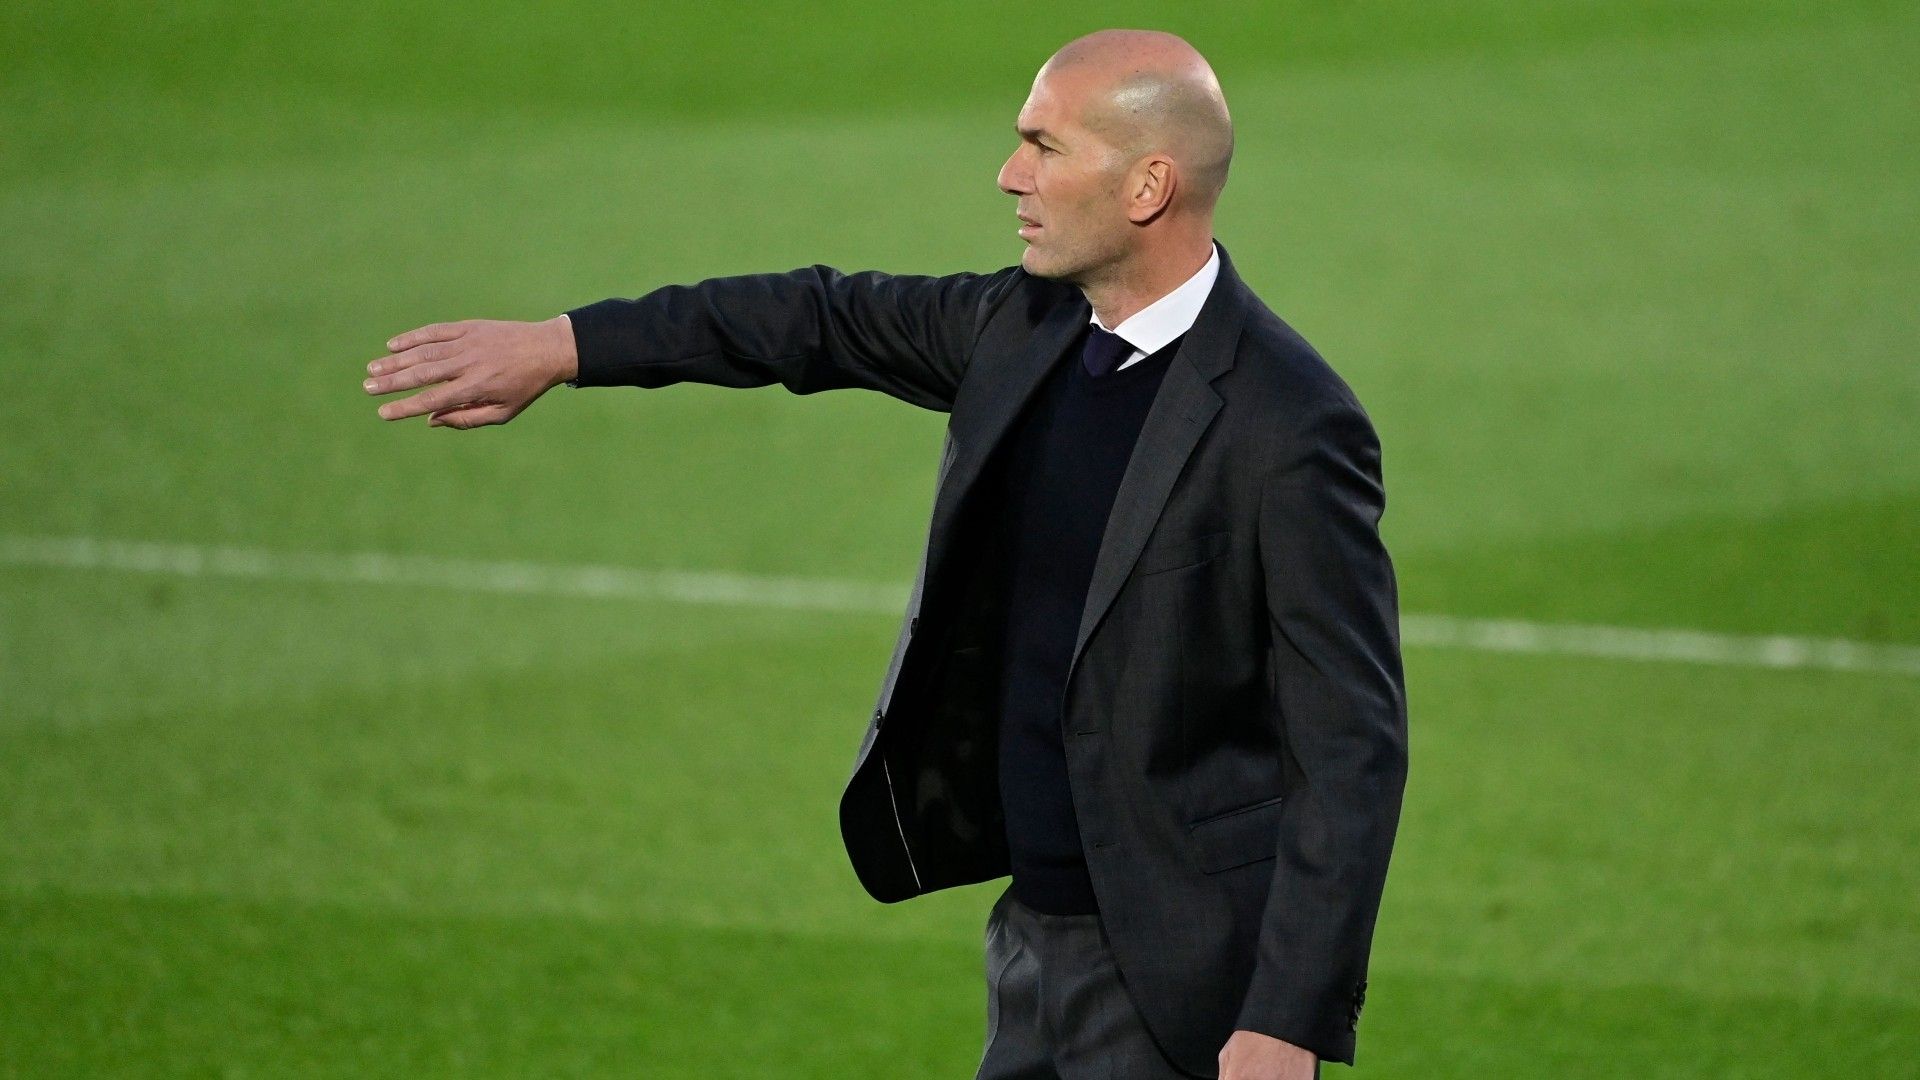 Tin chuyển nhượng trưa 9/4: Al Nassr chấm dứt hợp đồng với Ronaldo; MU chính thức chiêu mộ Zidane